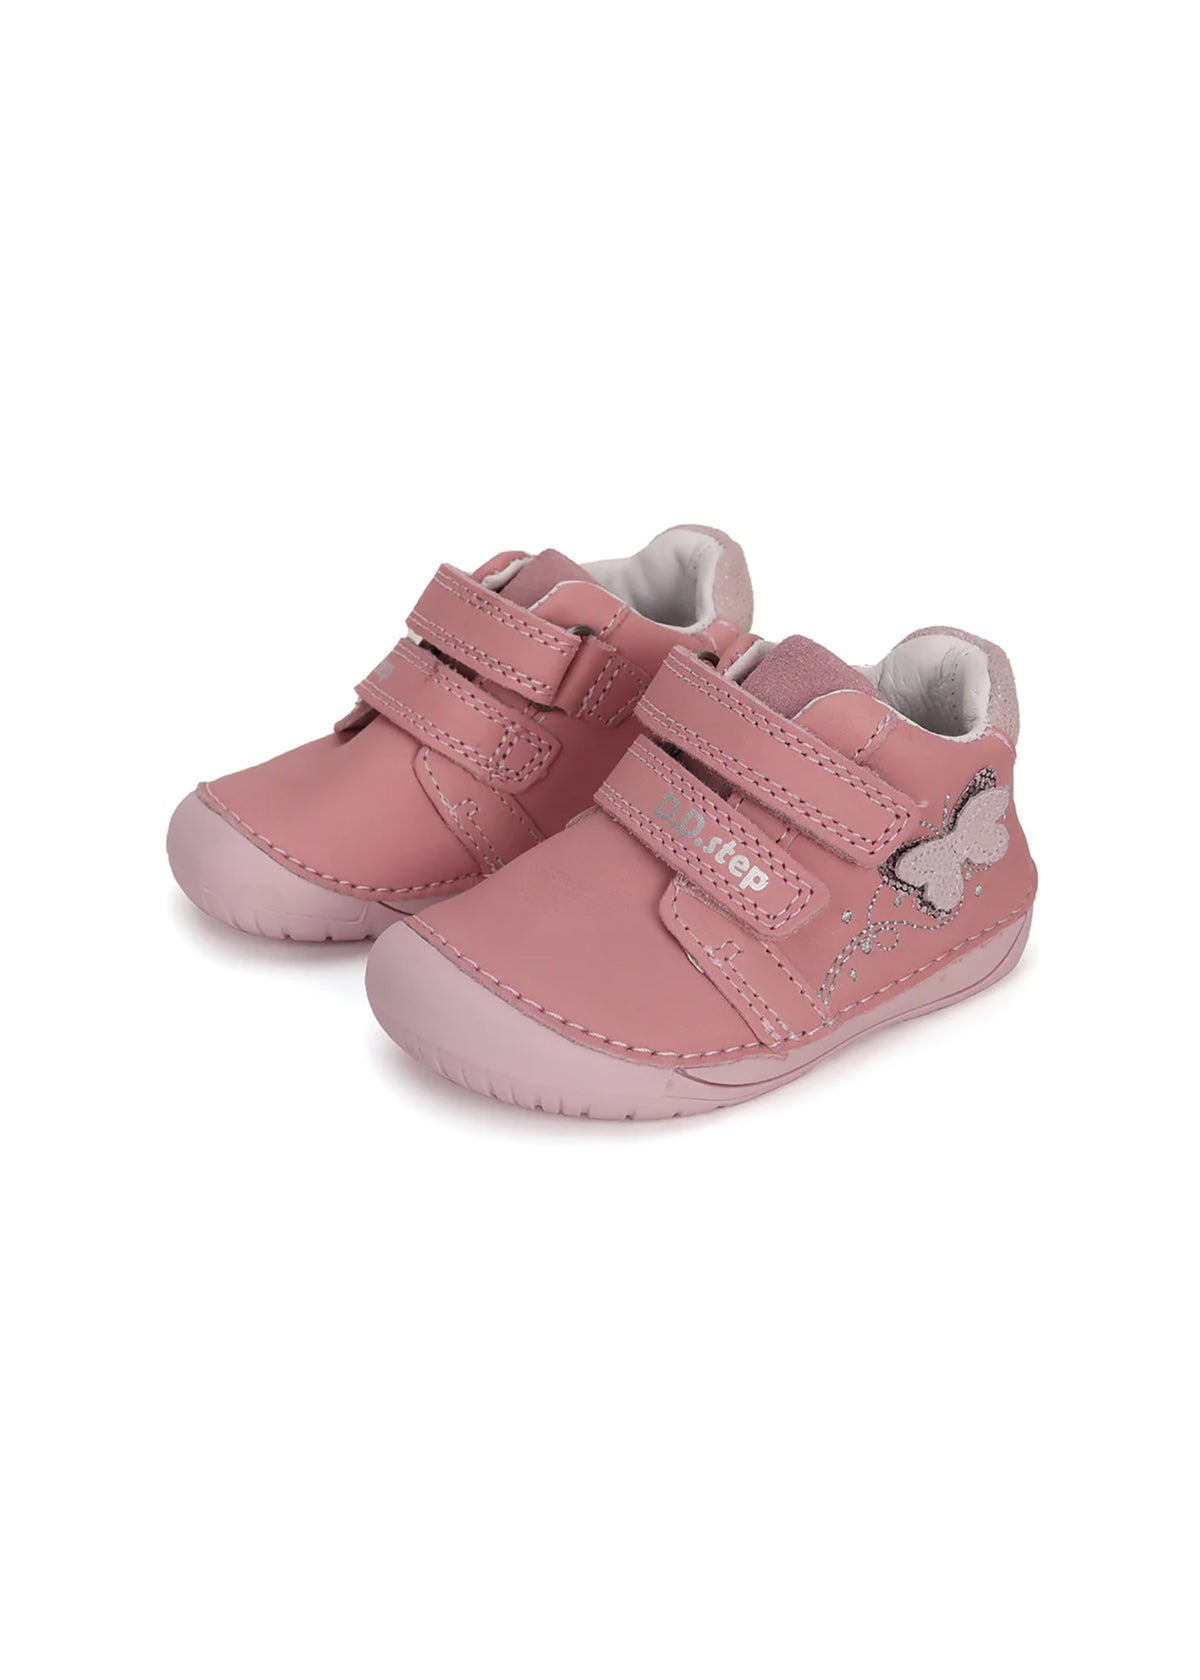 Barns första steg skor - rosa läder, fjäril